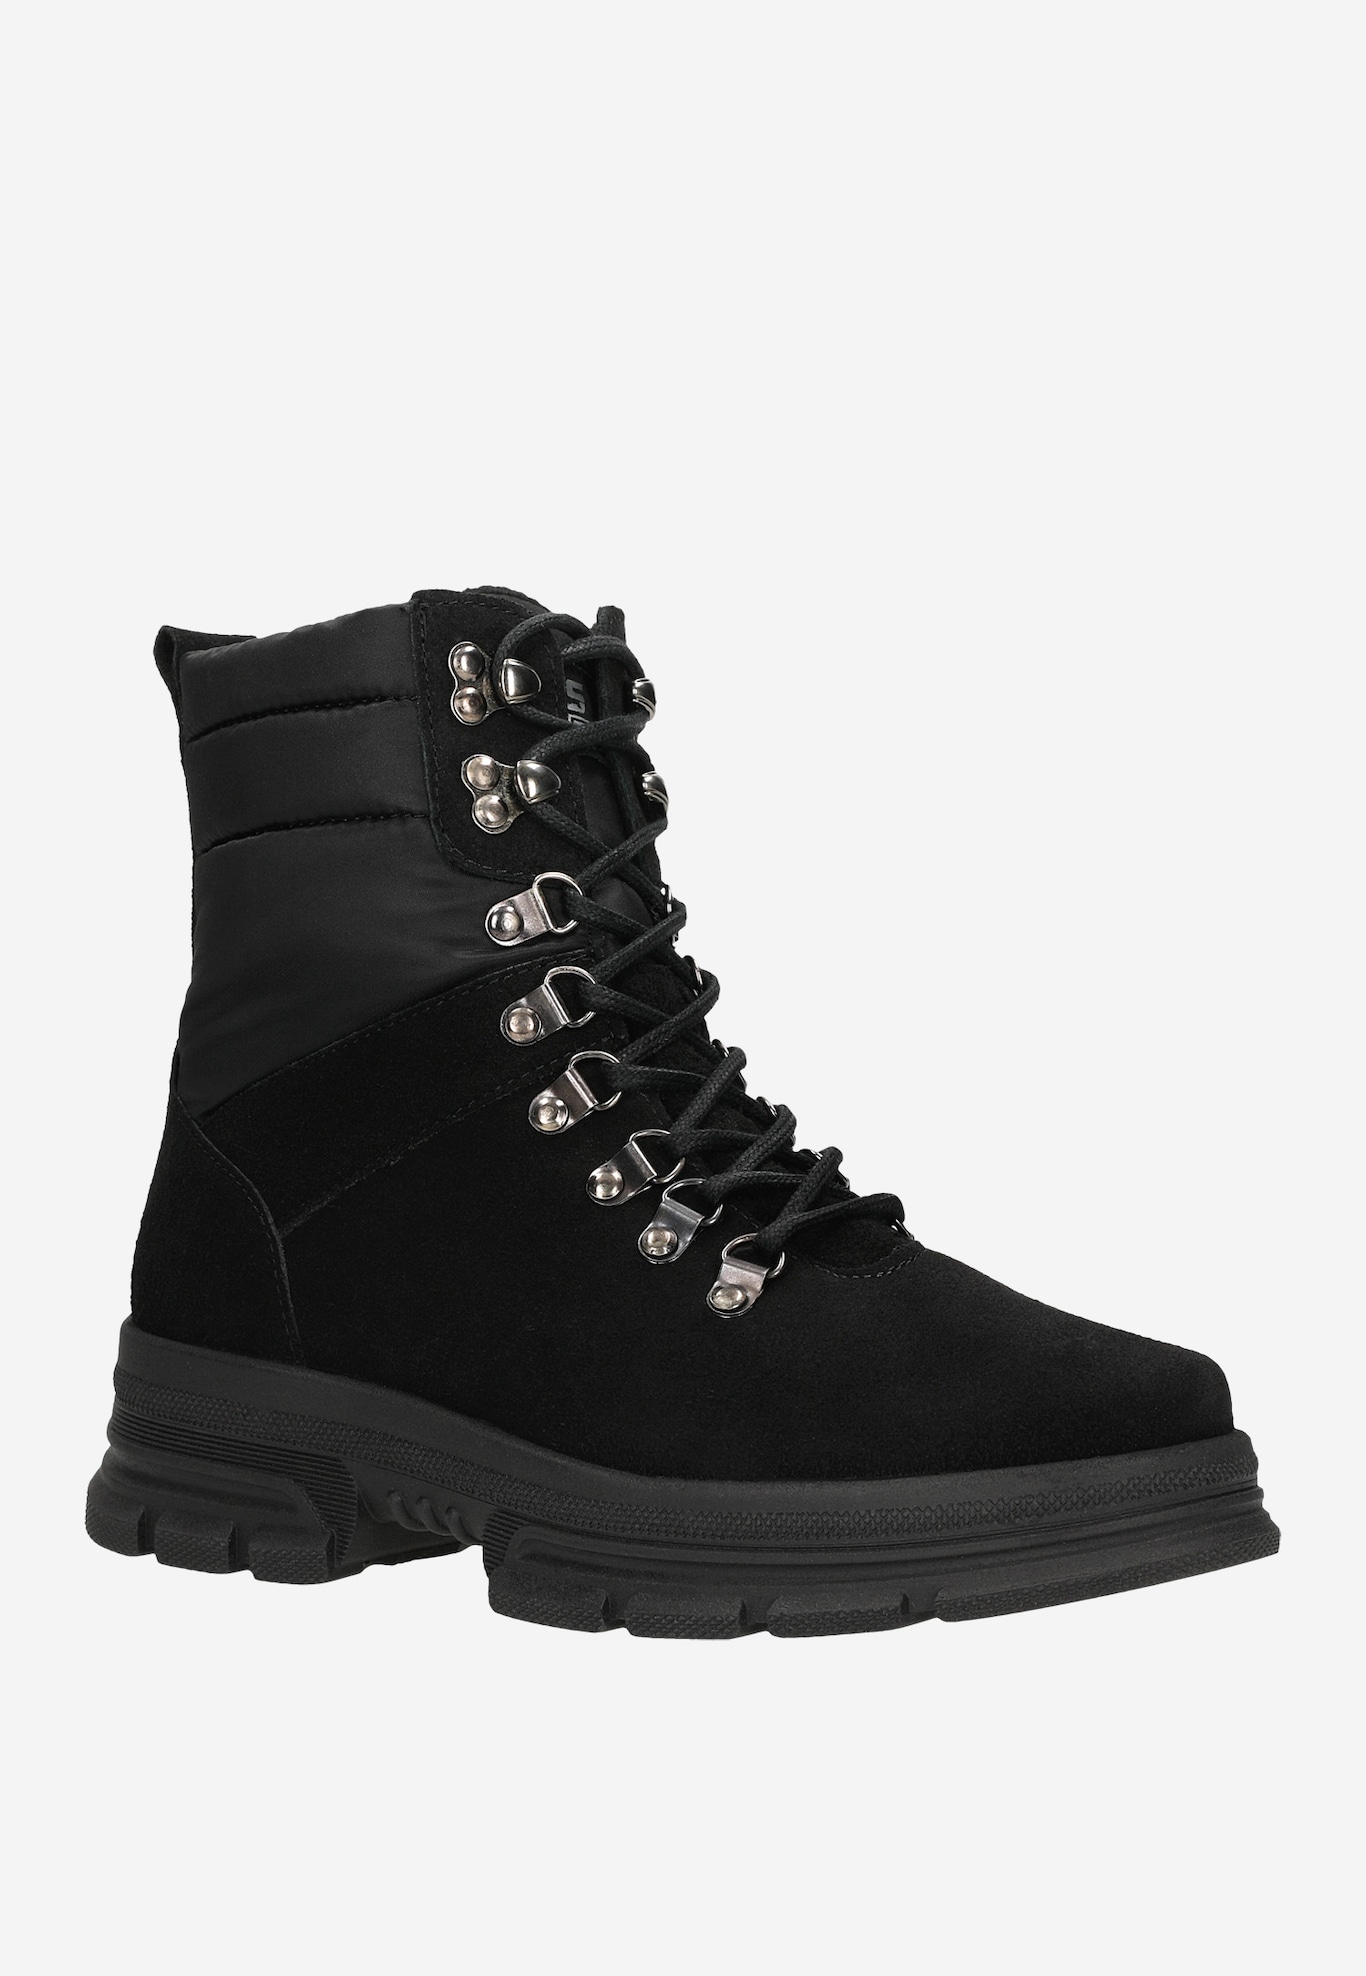 Boots Women's RELAKS R64005-11 | Wojas.eu online store